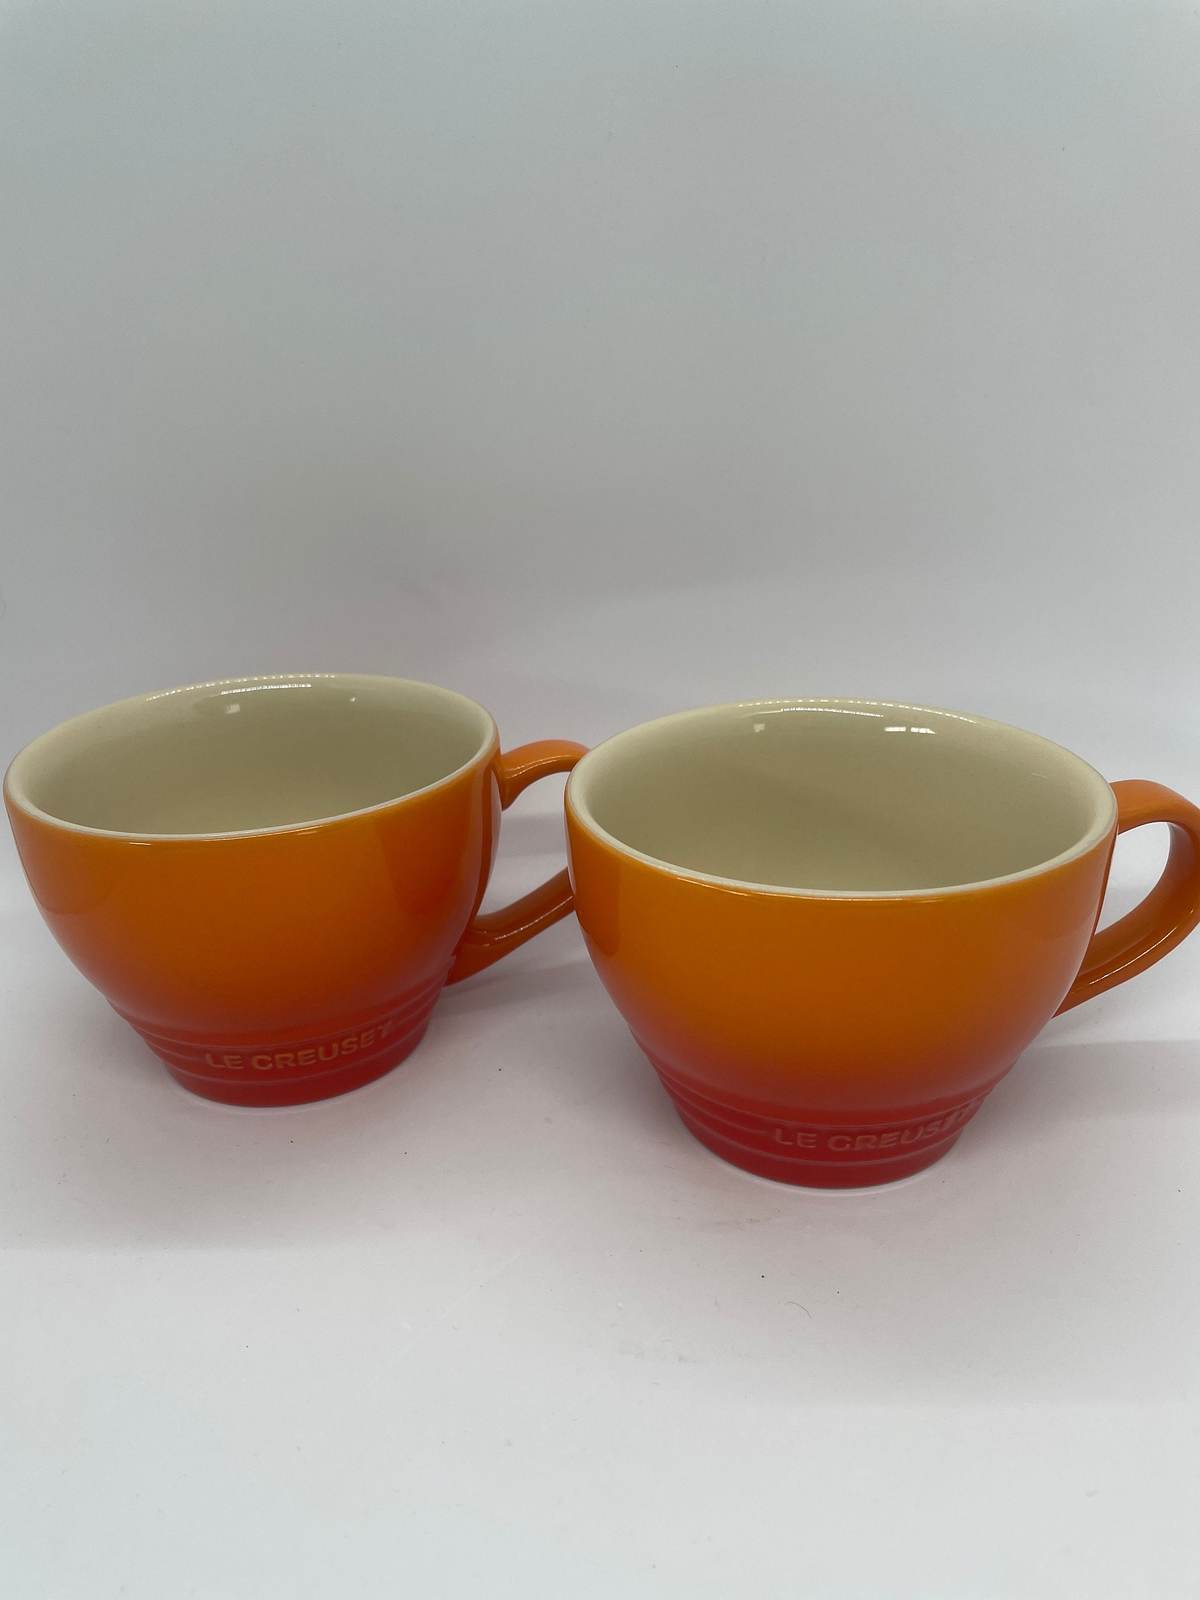 Le creuset set of 2 mugs orange flame ombré vintage mugs - $45.20